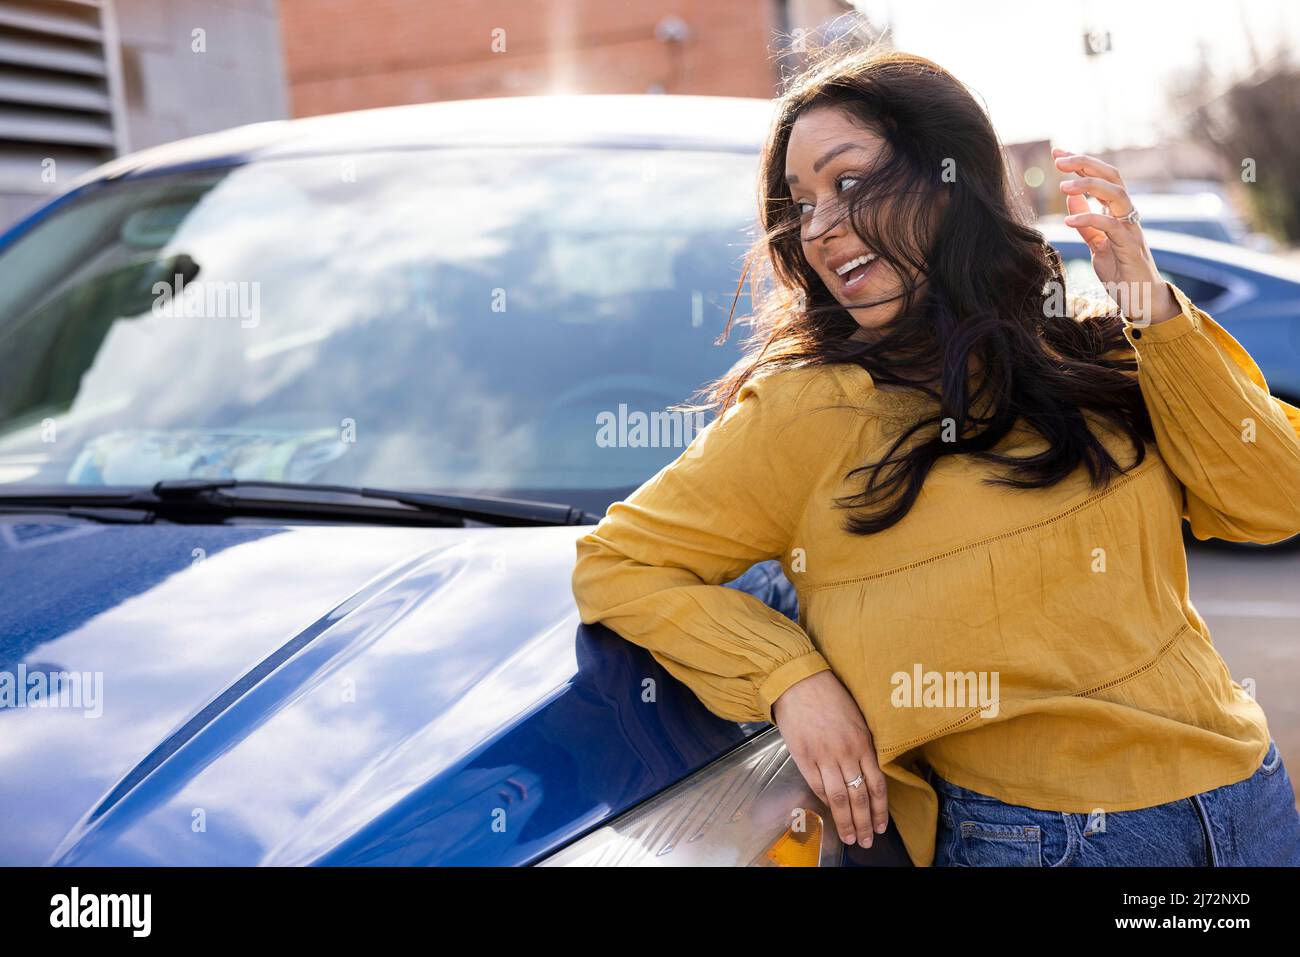 Lächelnde junge Frau, die über ihre Schulter blickt, mit ihren im Wind wehenden Haaren, die sich gegen das Auto lehnen. Stockfoto